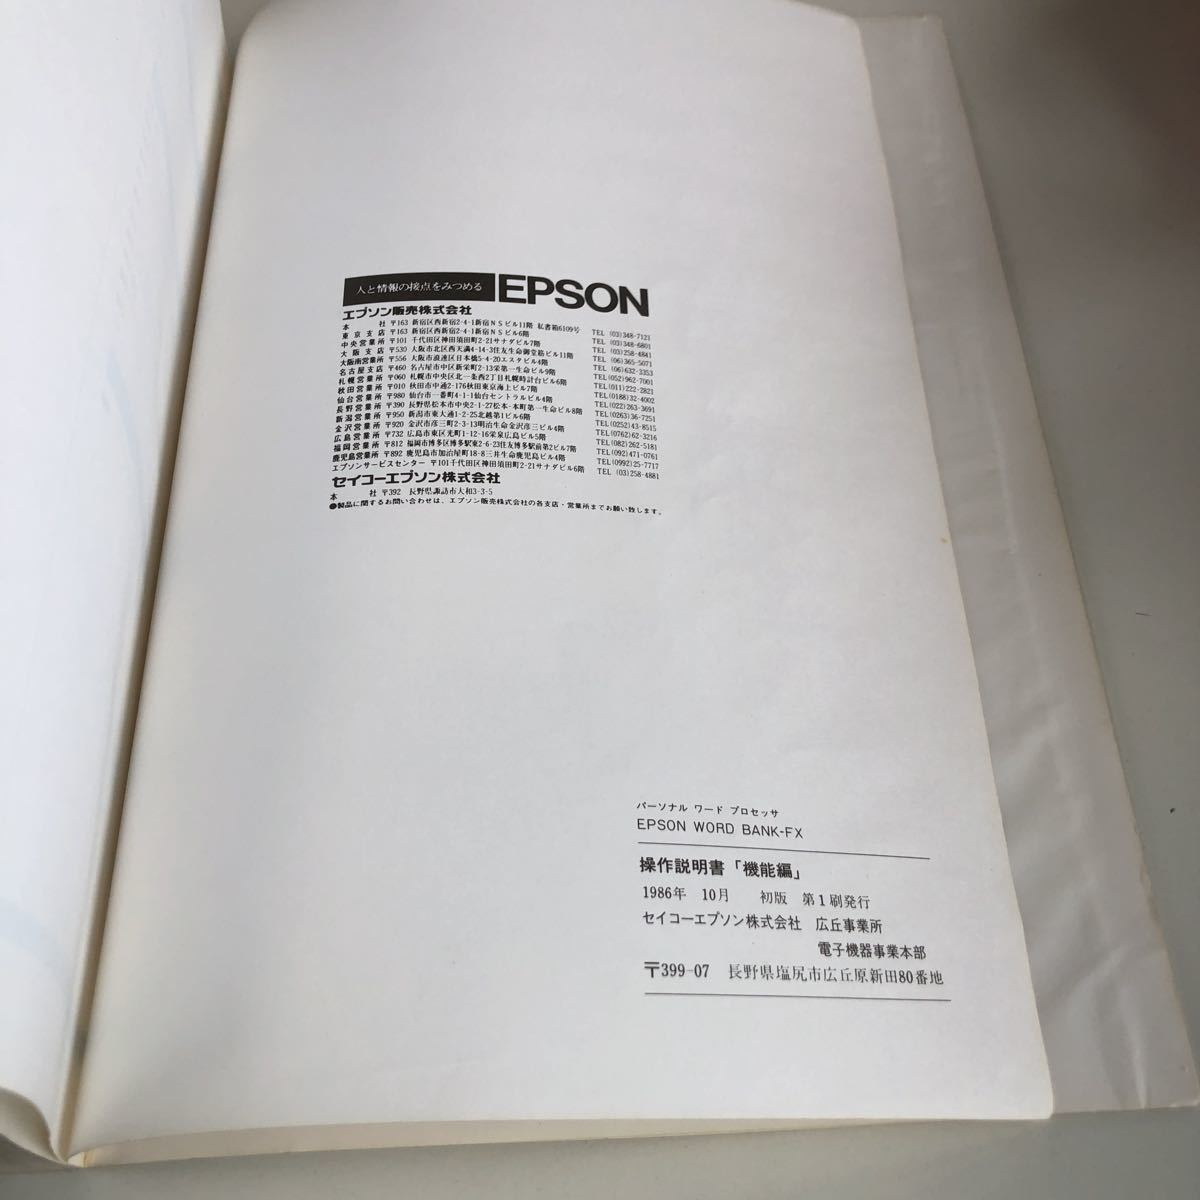 M5a-375 personal слово процессор EPSON world банк инструкция PWP-850FX функционирование инструкция функция сборник 1986 год первая версия 